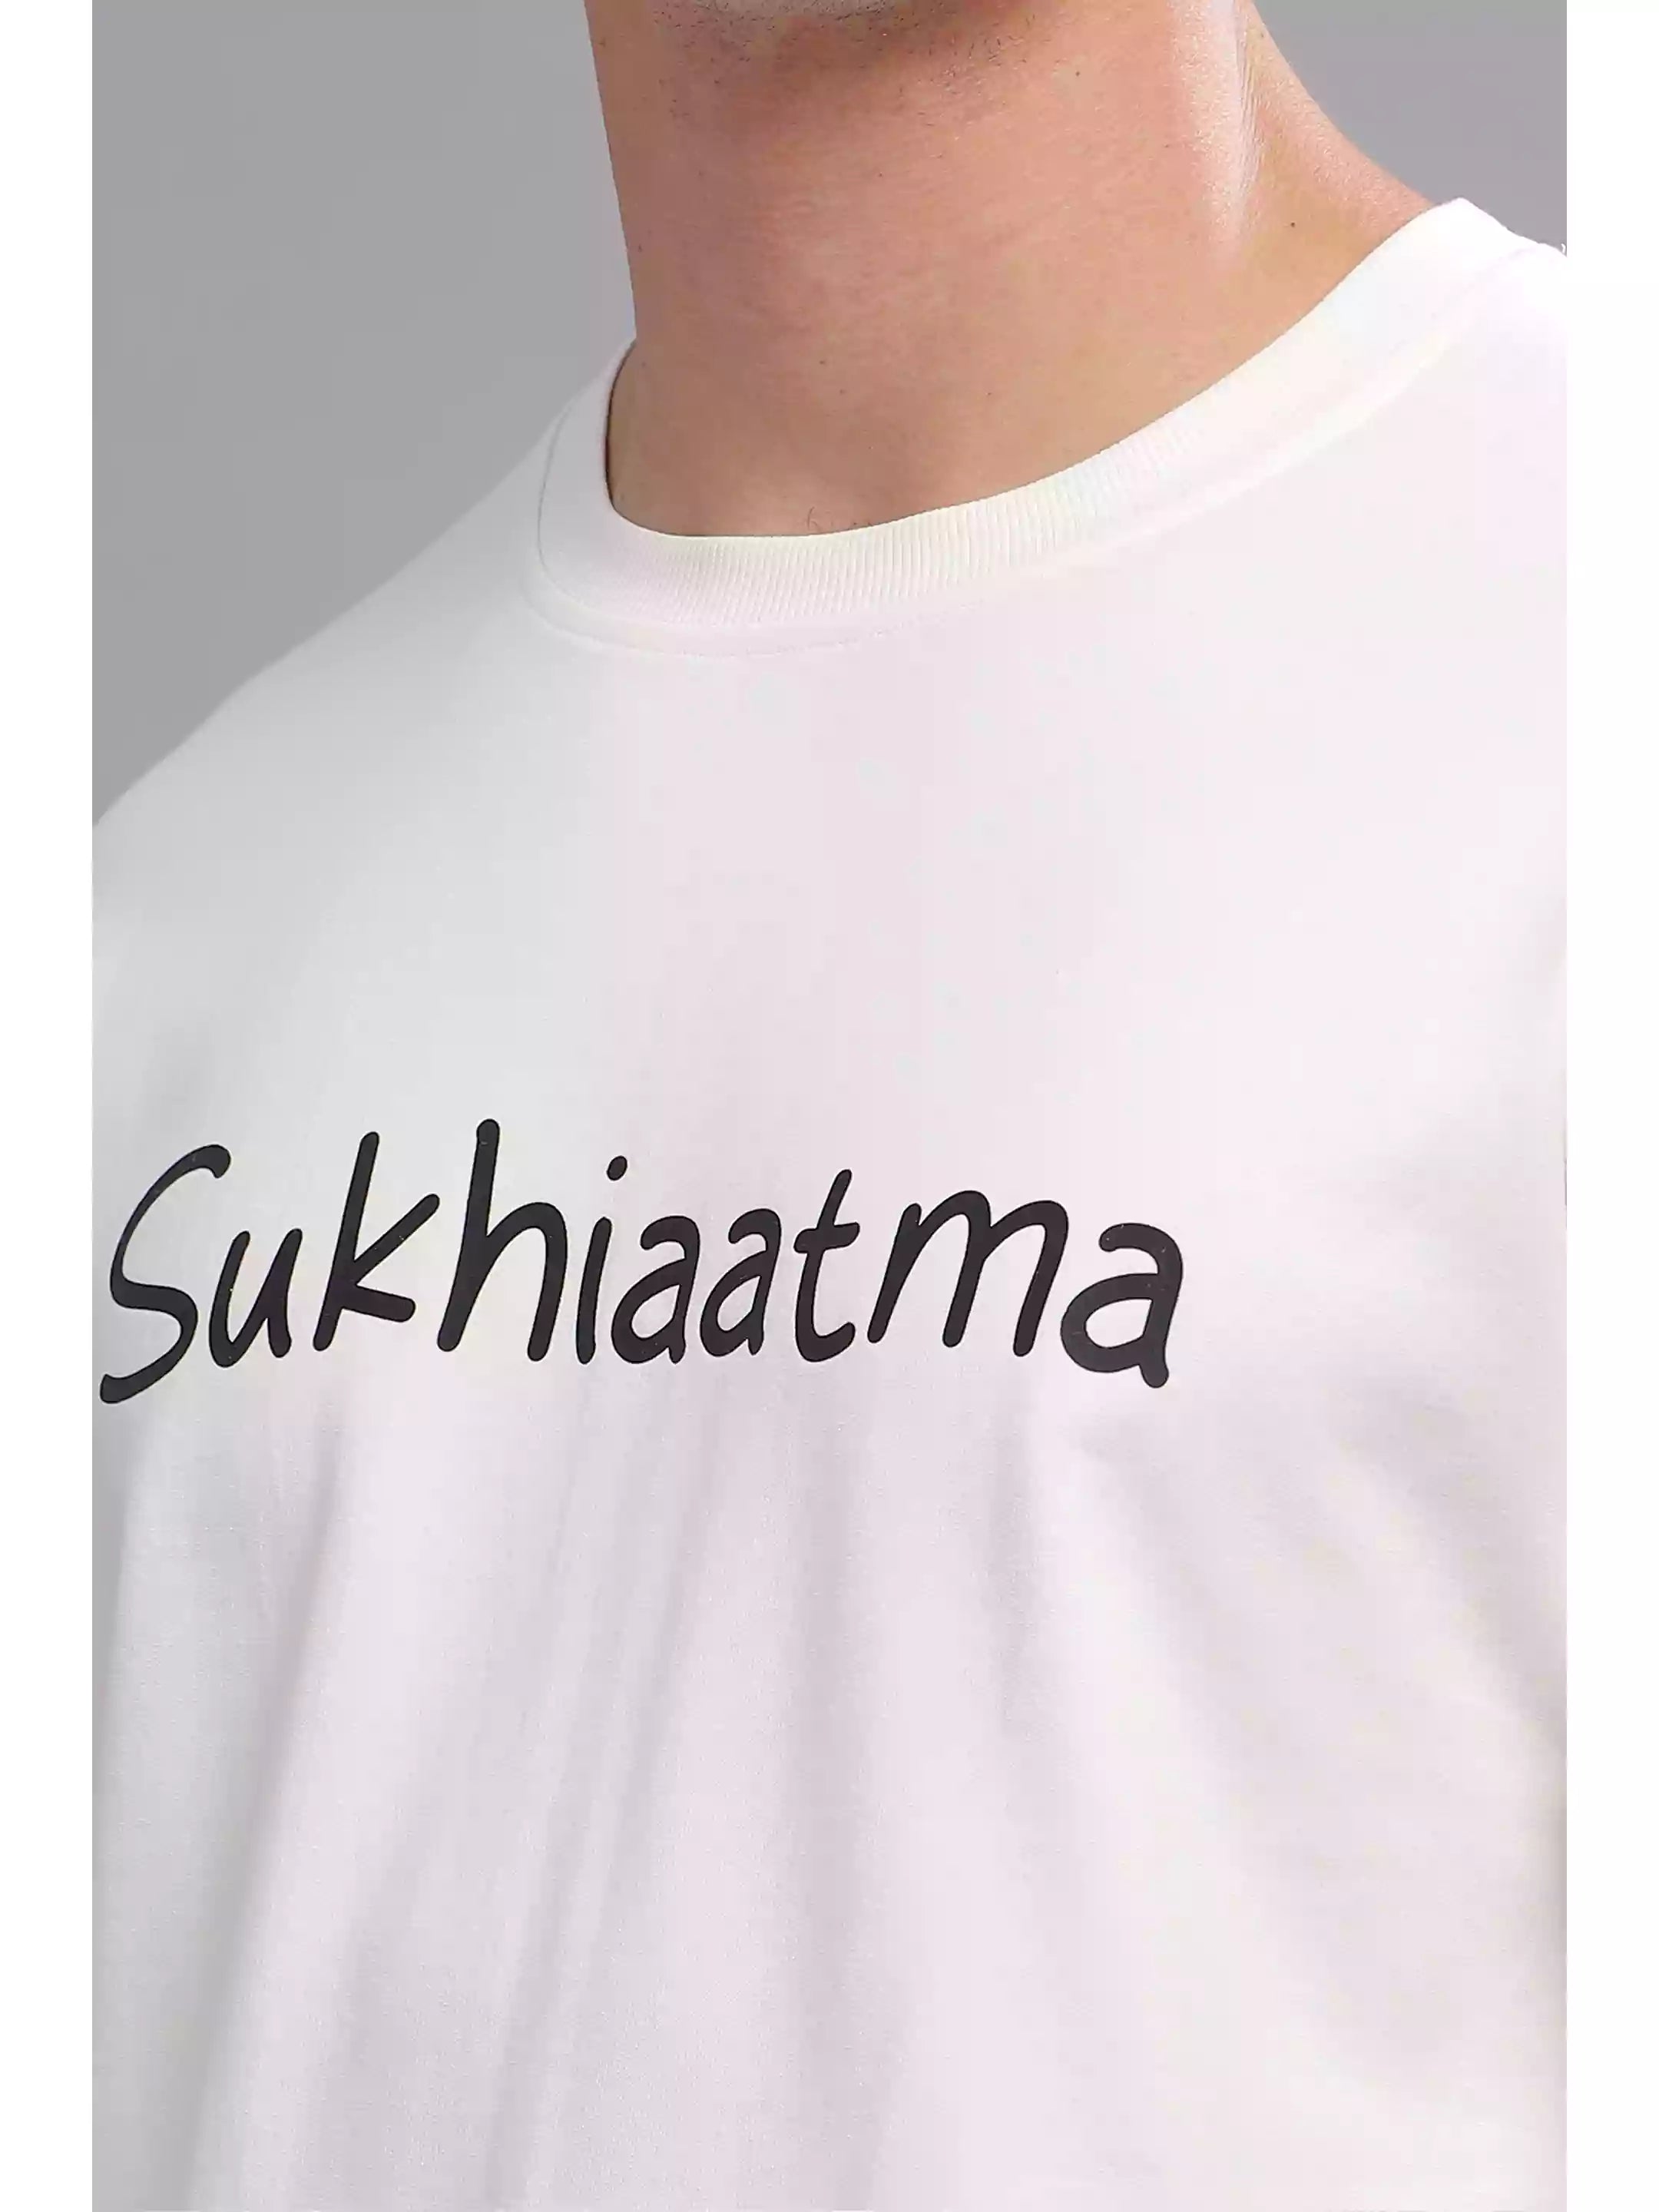 You Can - Sukhiaatma Unisex Oversize White T-shirt